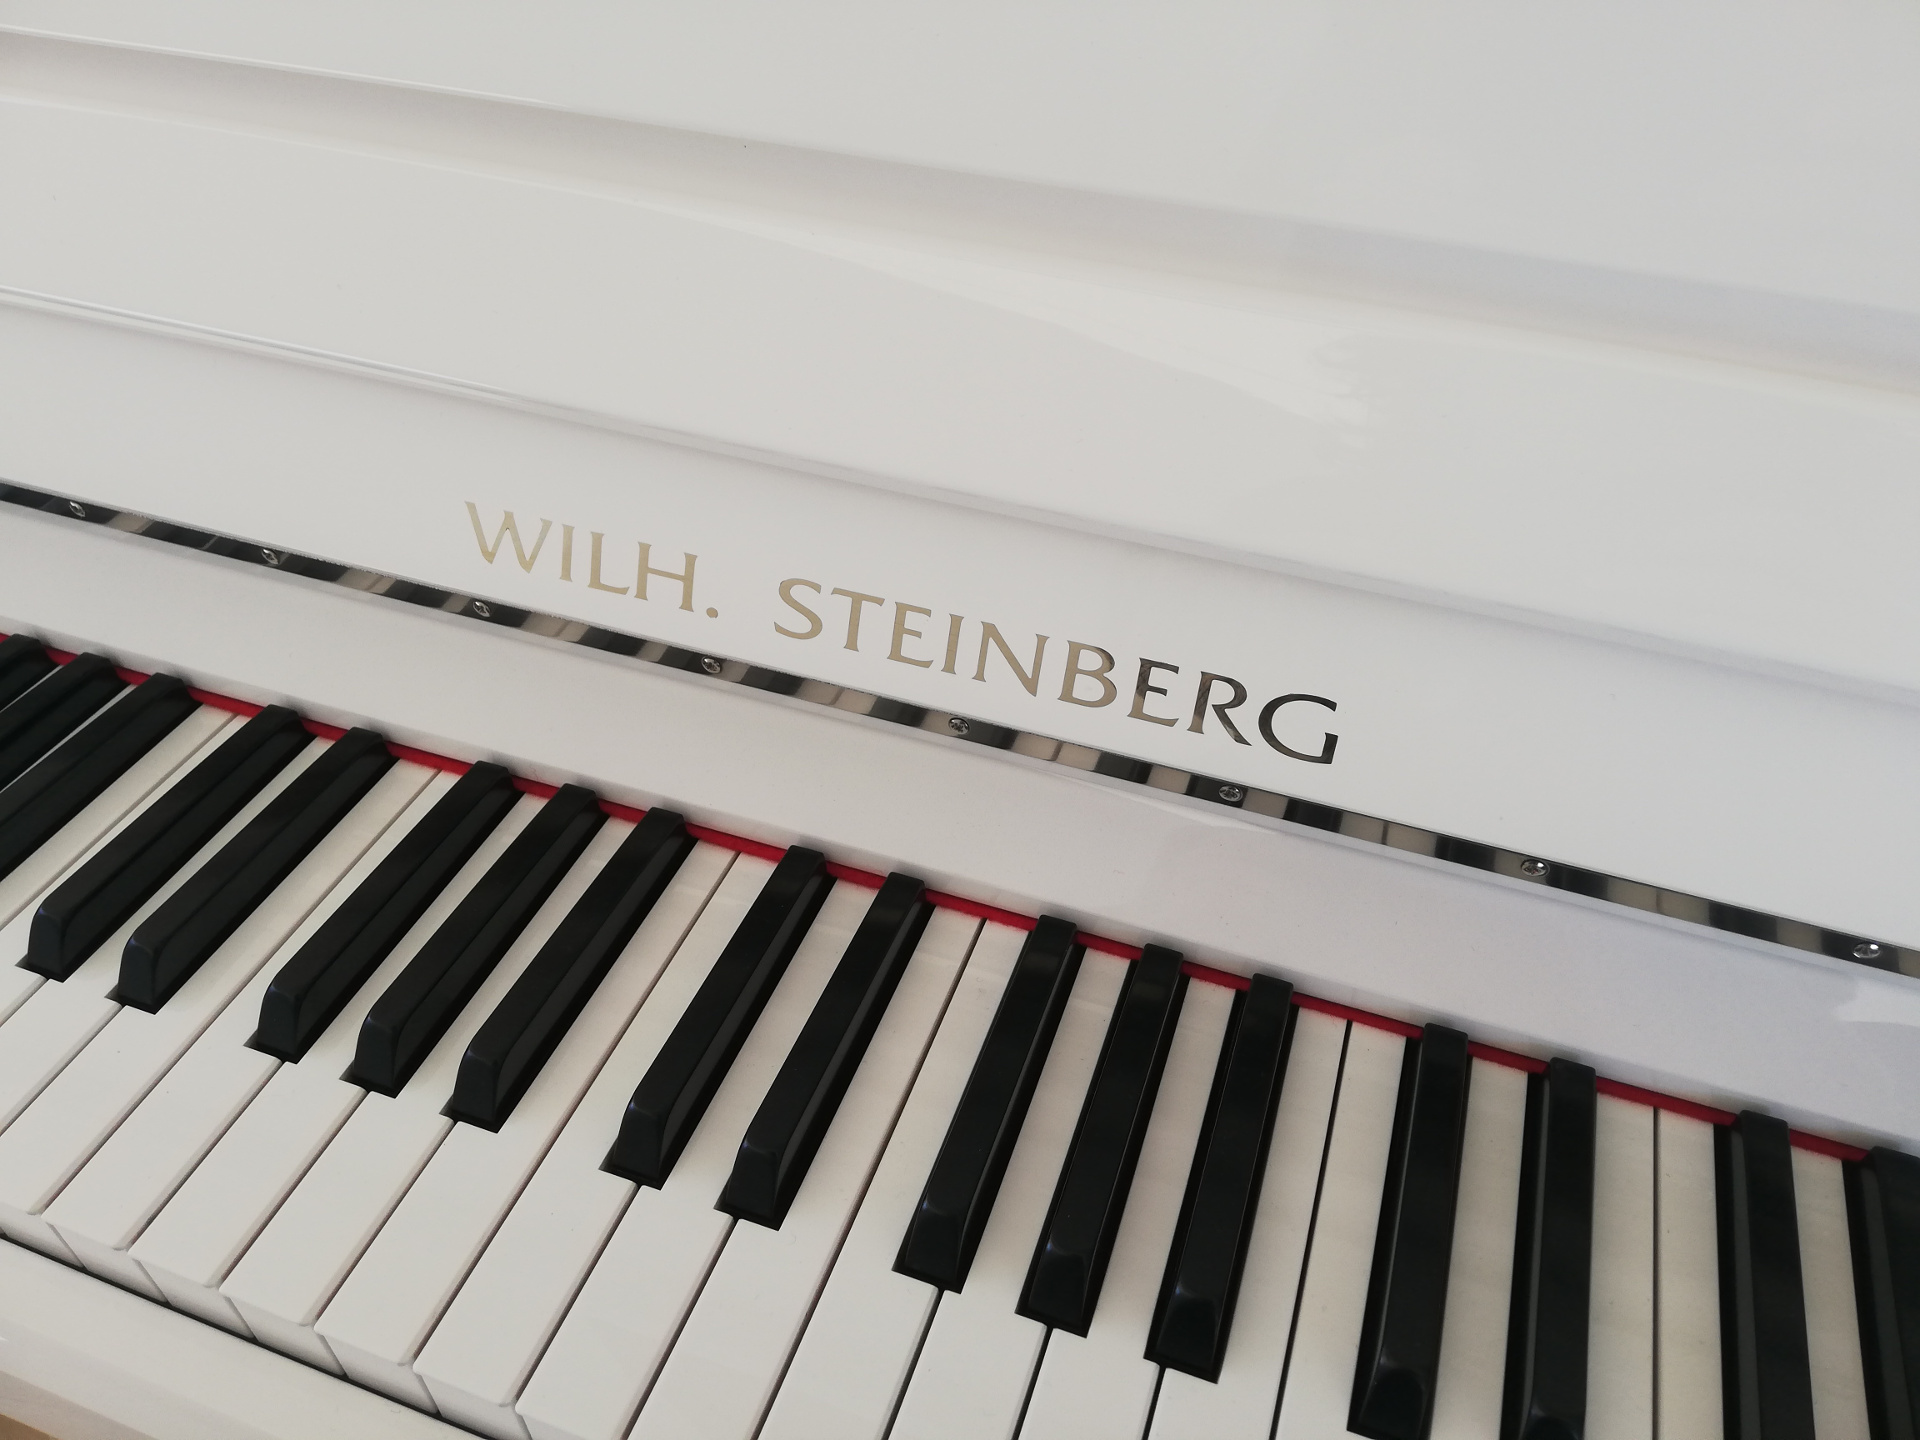 Marken Klavier und Piano - Beispiel Wilh. Steinberg